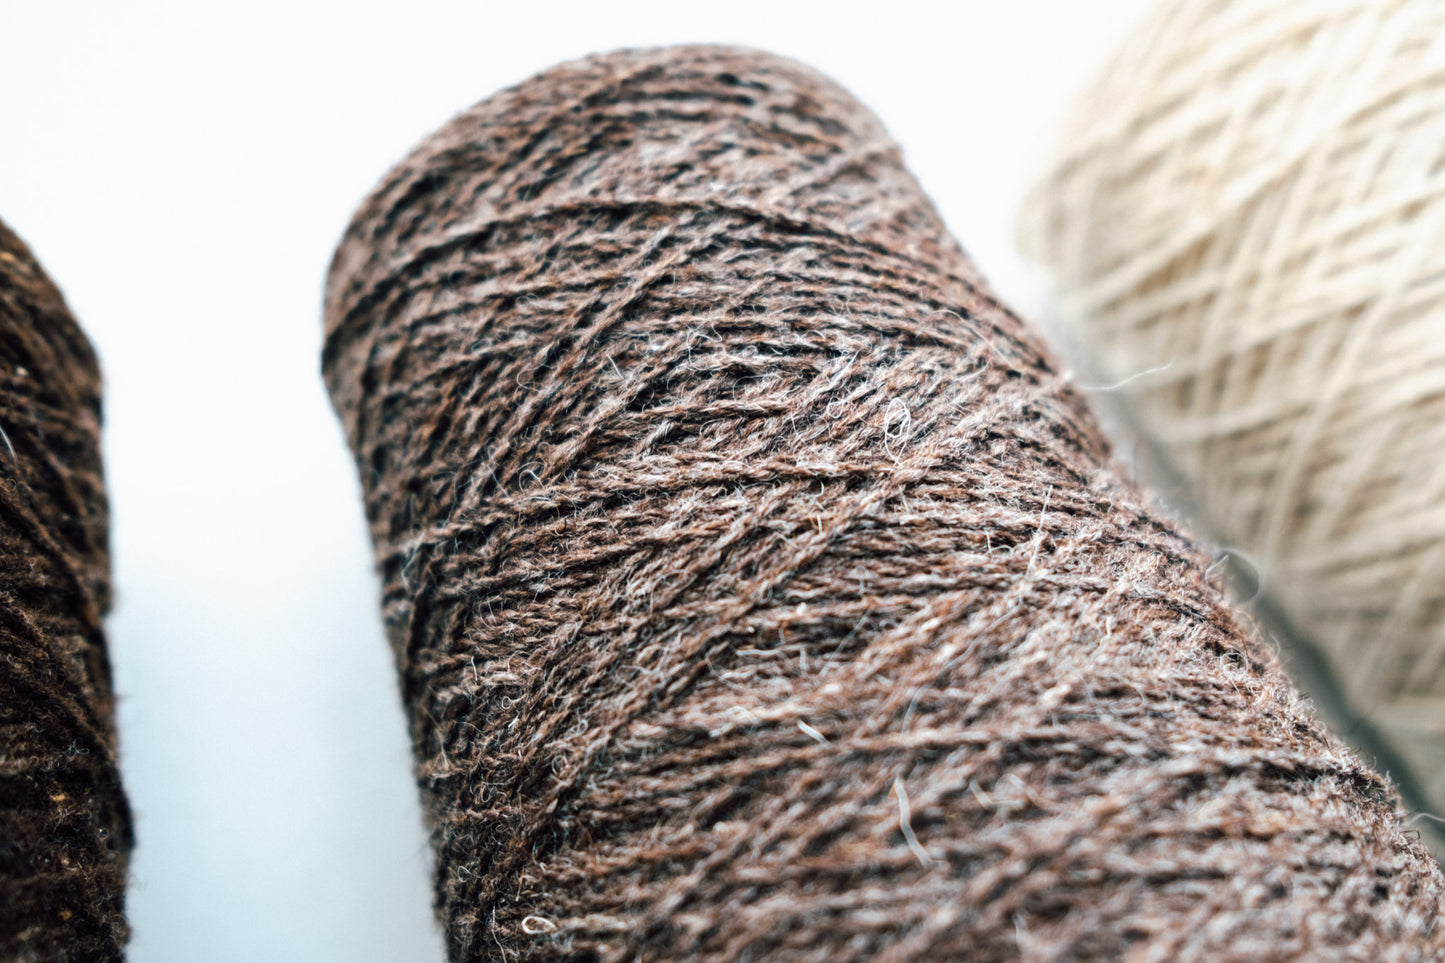 Teia yarn - 100% wool